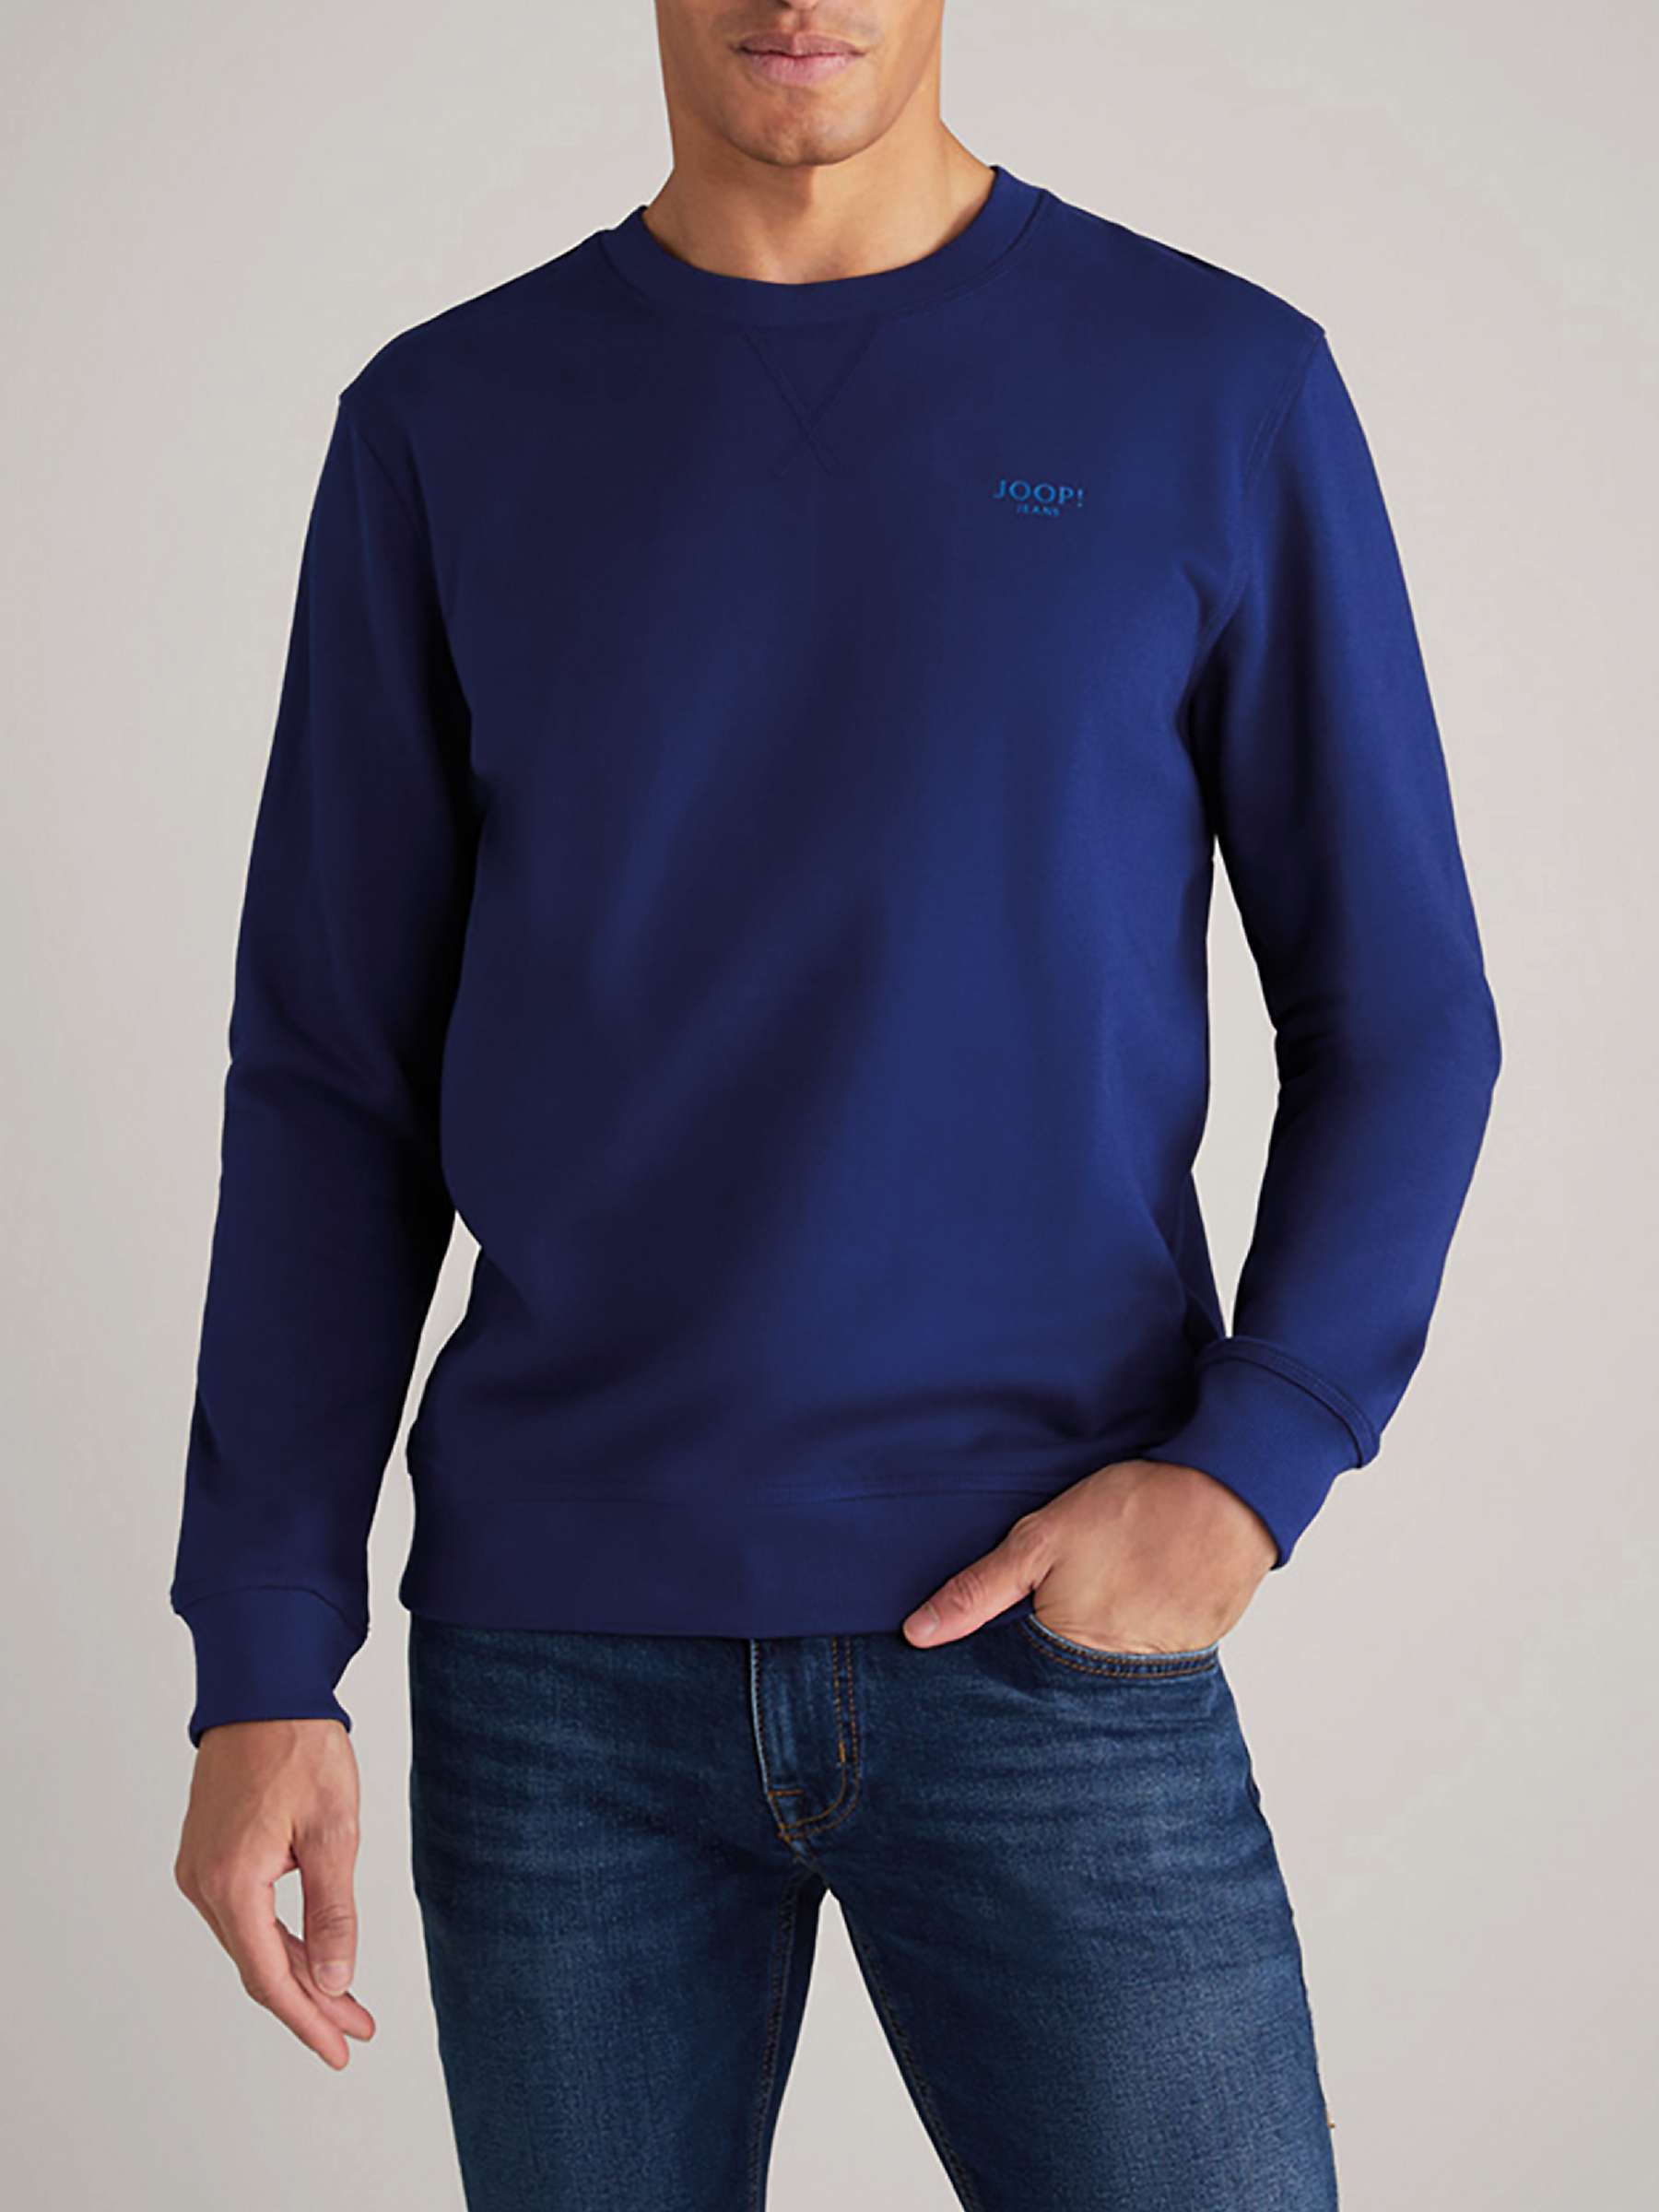 Buy JOOP! Salazar Sweatshirt, Navy Online at johnlewis.com